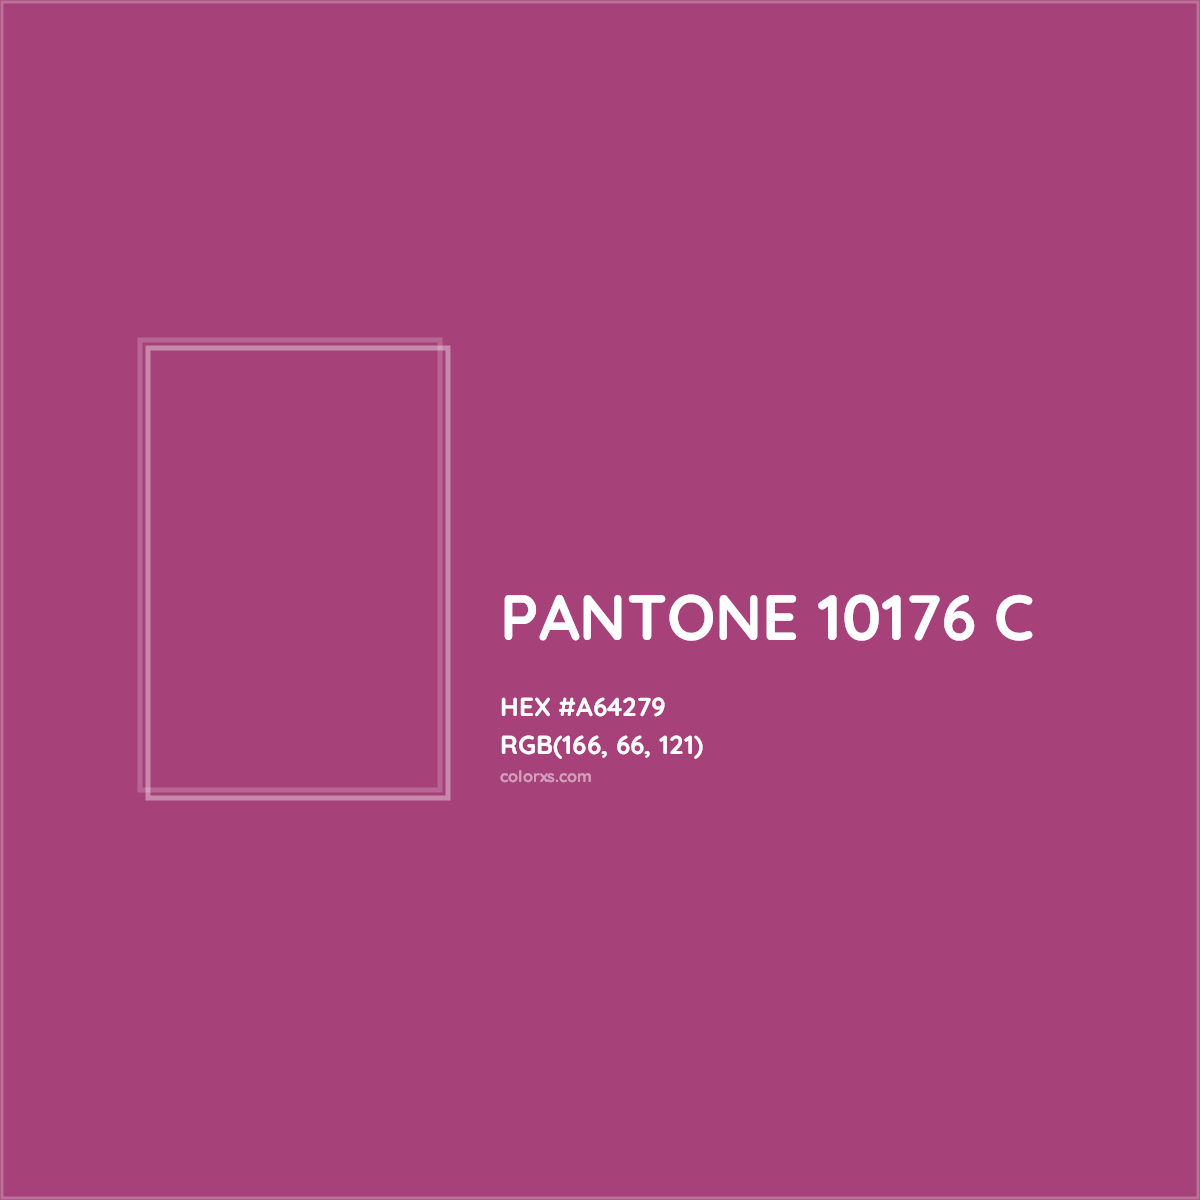 HEX #A64279 PANTONE 10176 C CMS Pantone PMS - Color Code